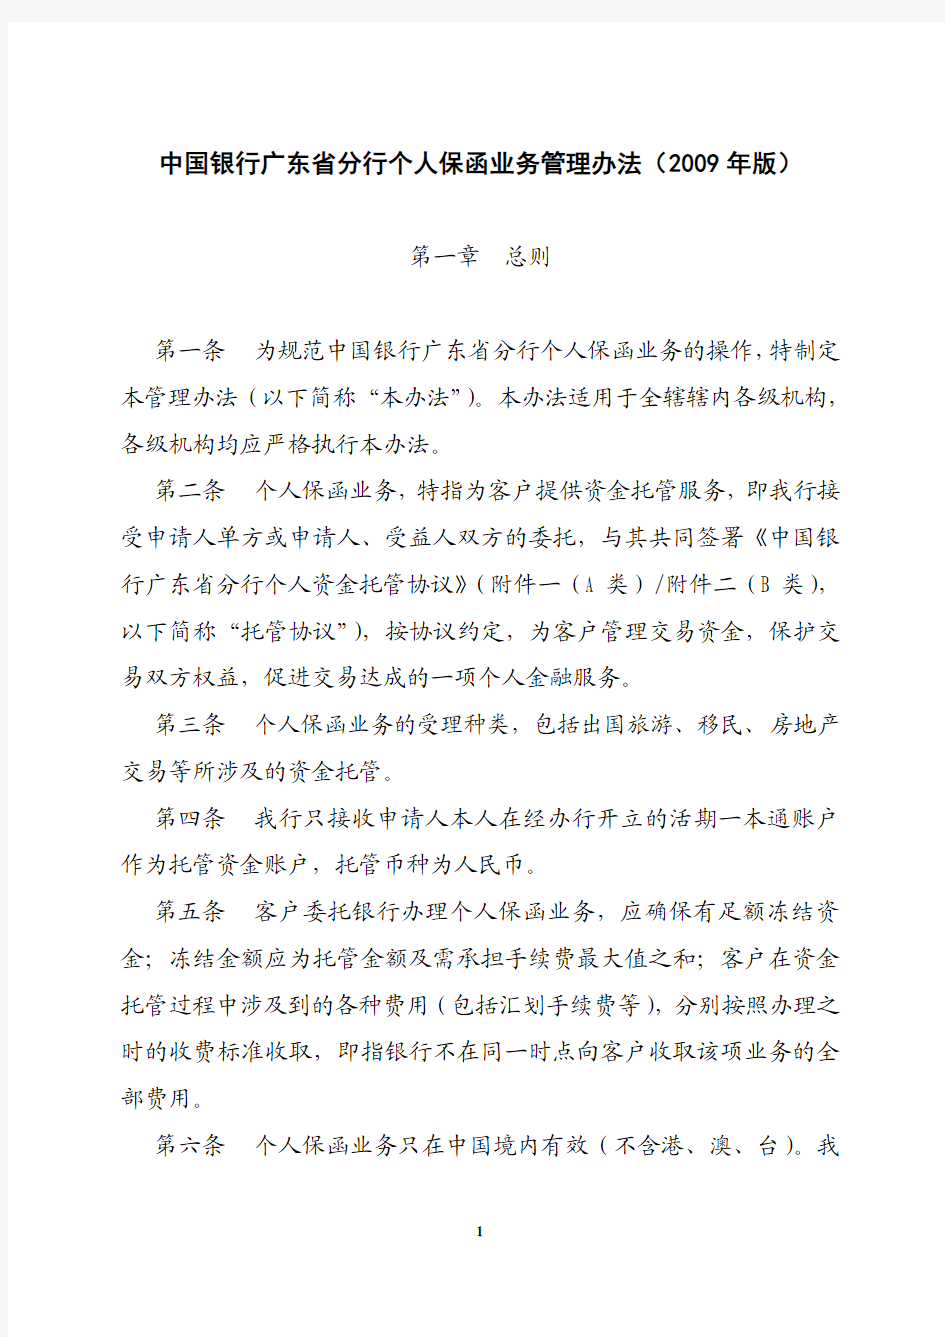 中国银行广东省分行个人保函业务管理办法2009年版